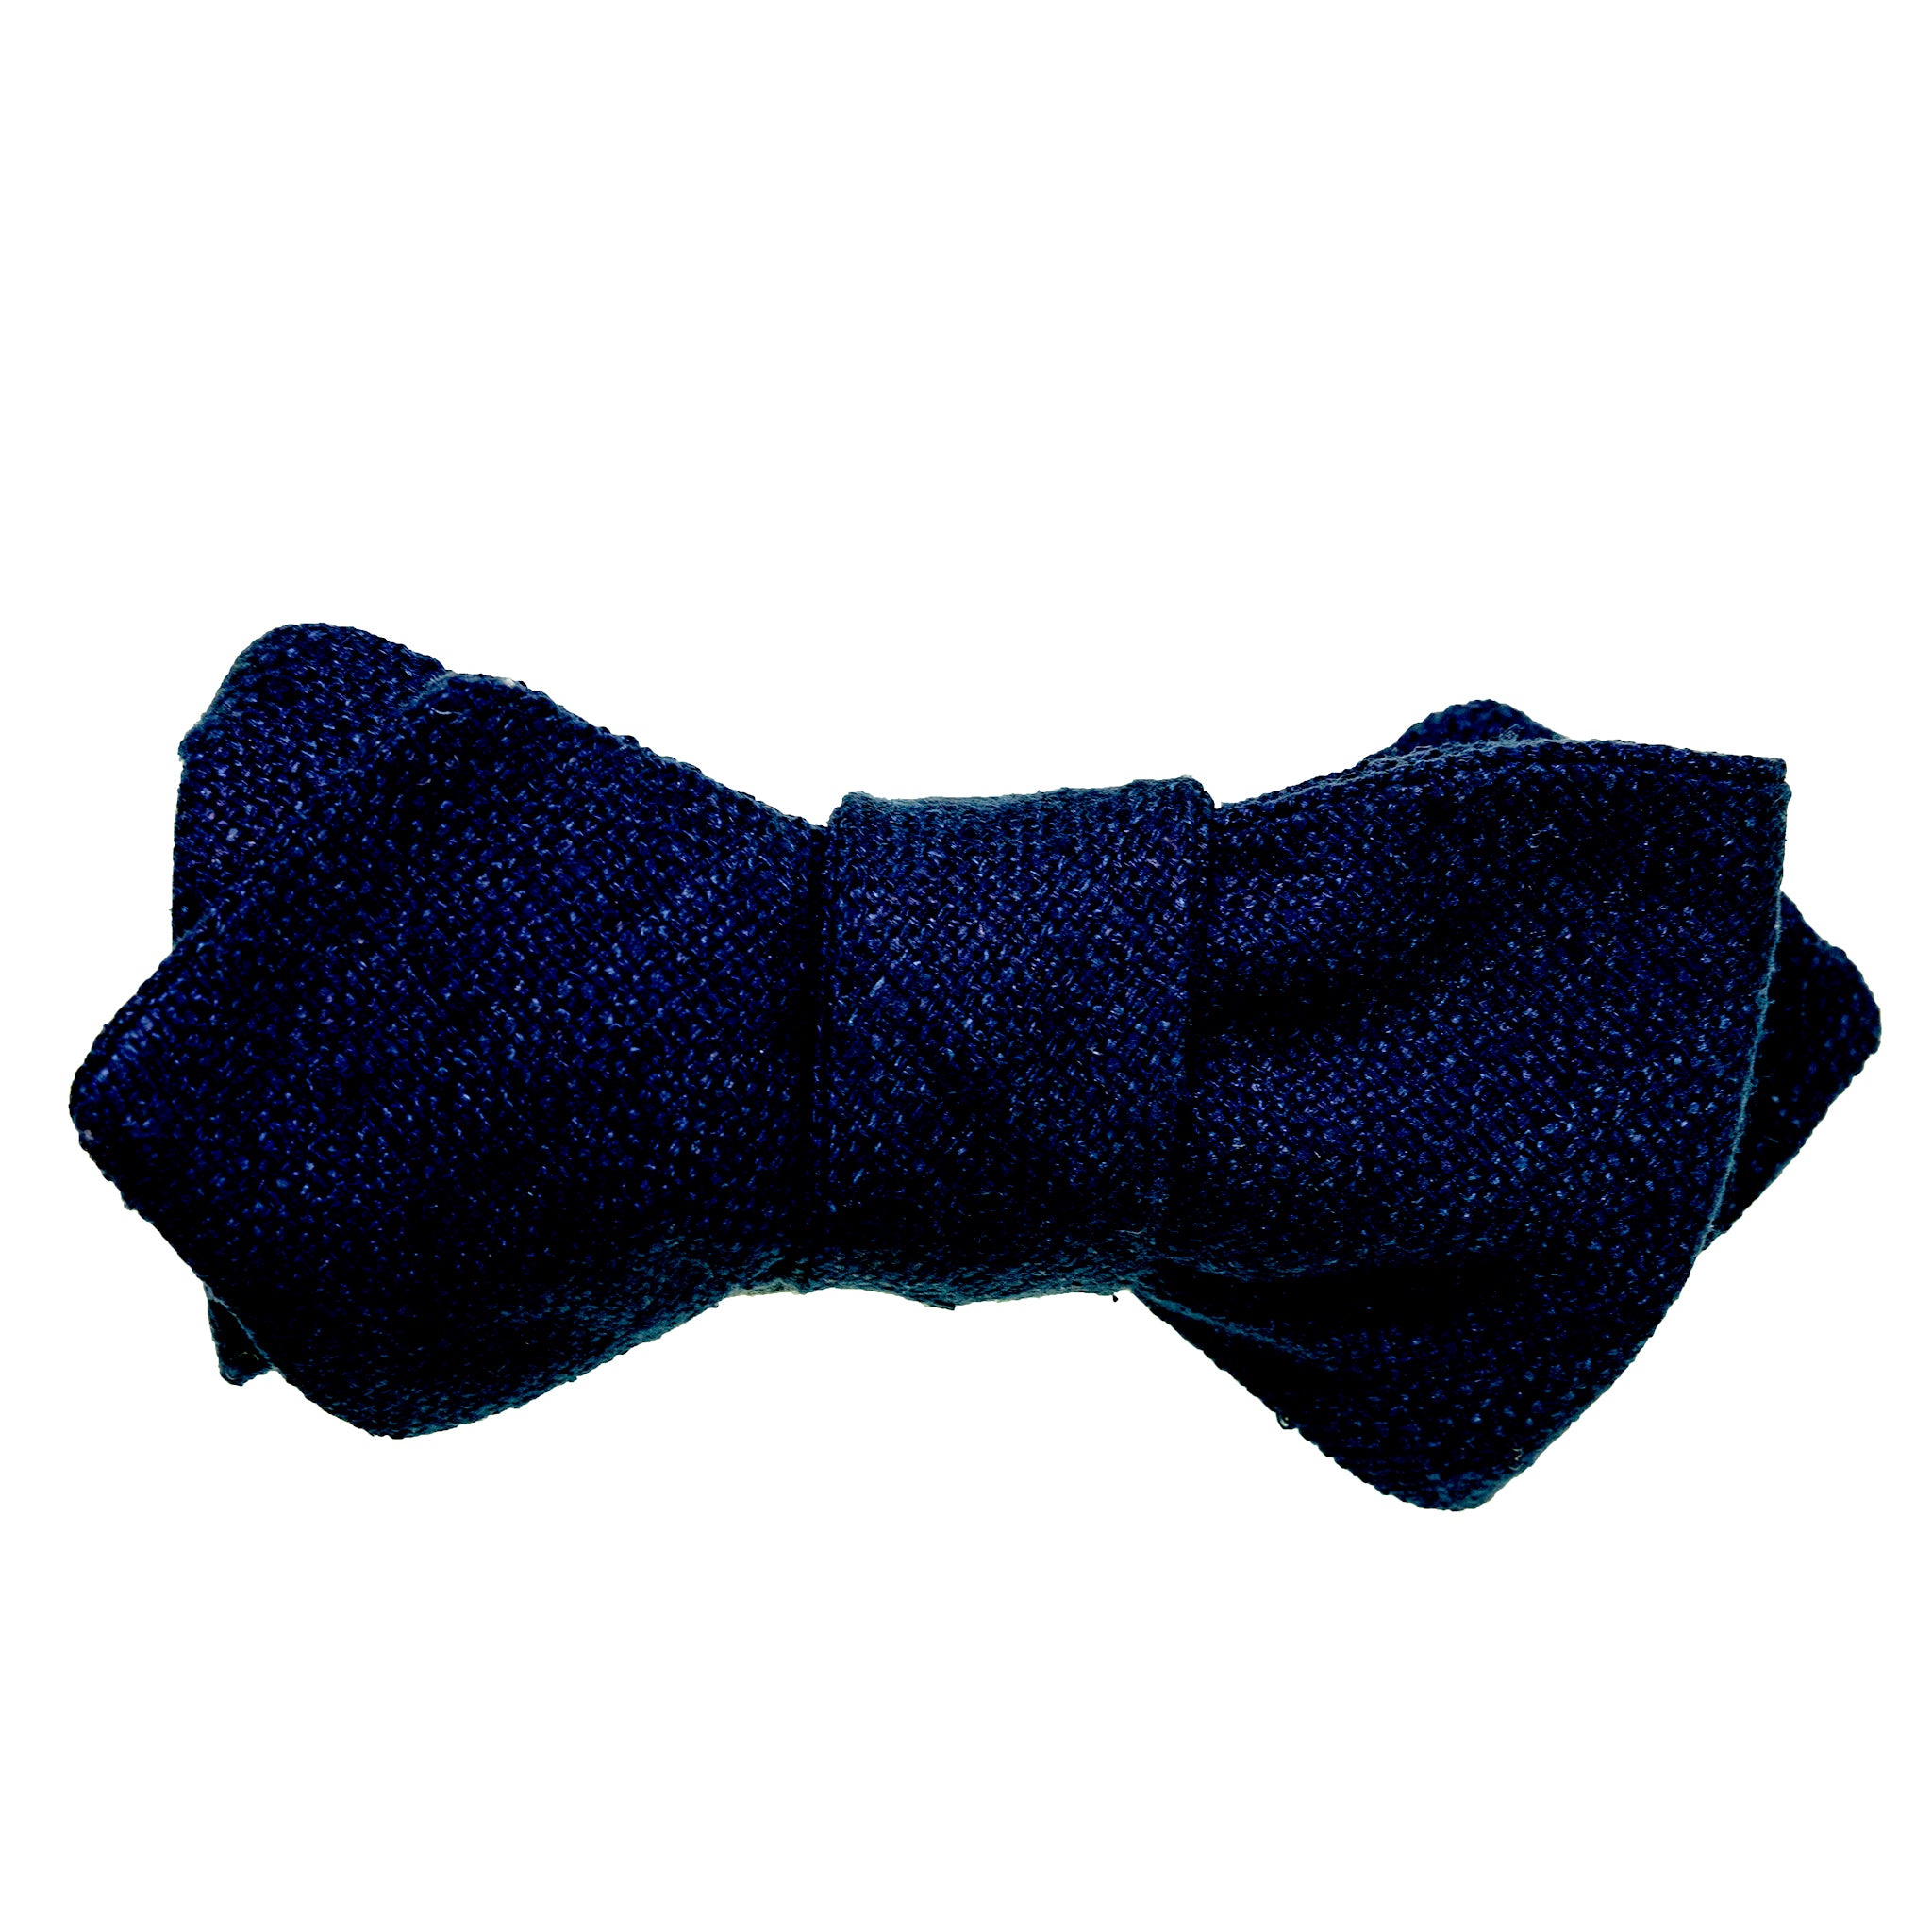 Deep Navy Raw Silk Bow Tie